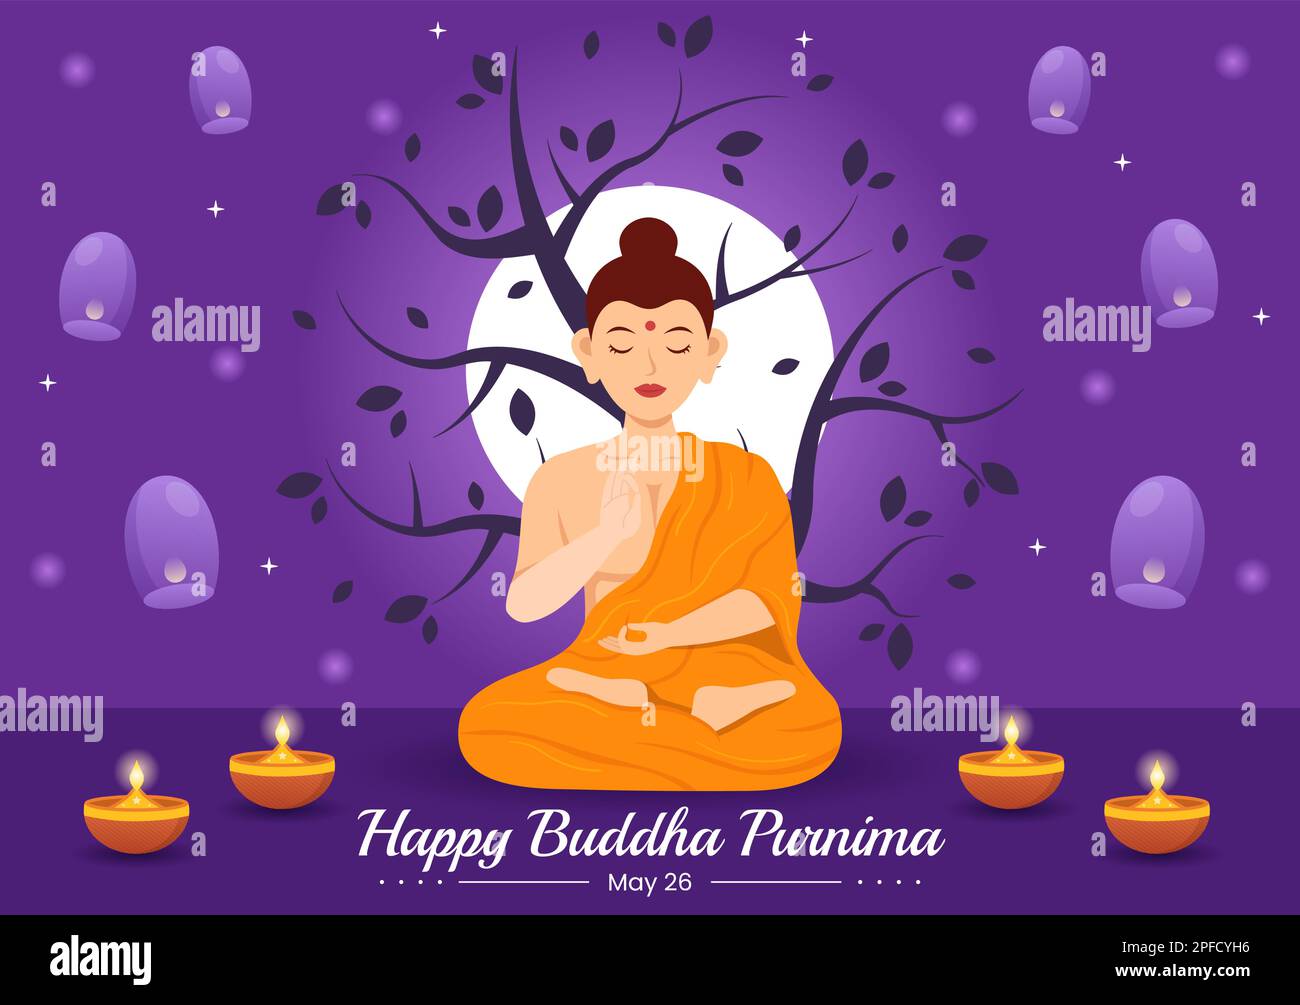 Happy Buddha Purnima Illustration with Vesak Day or Indian ...